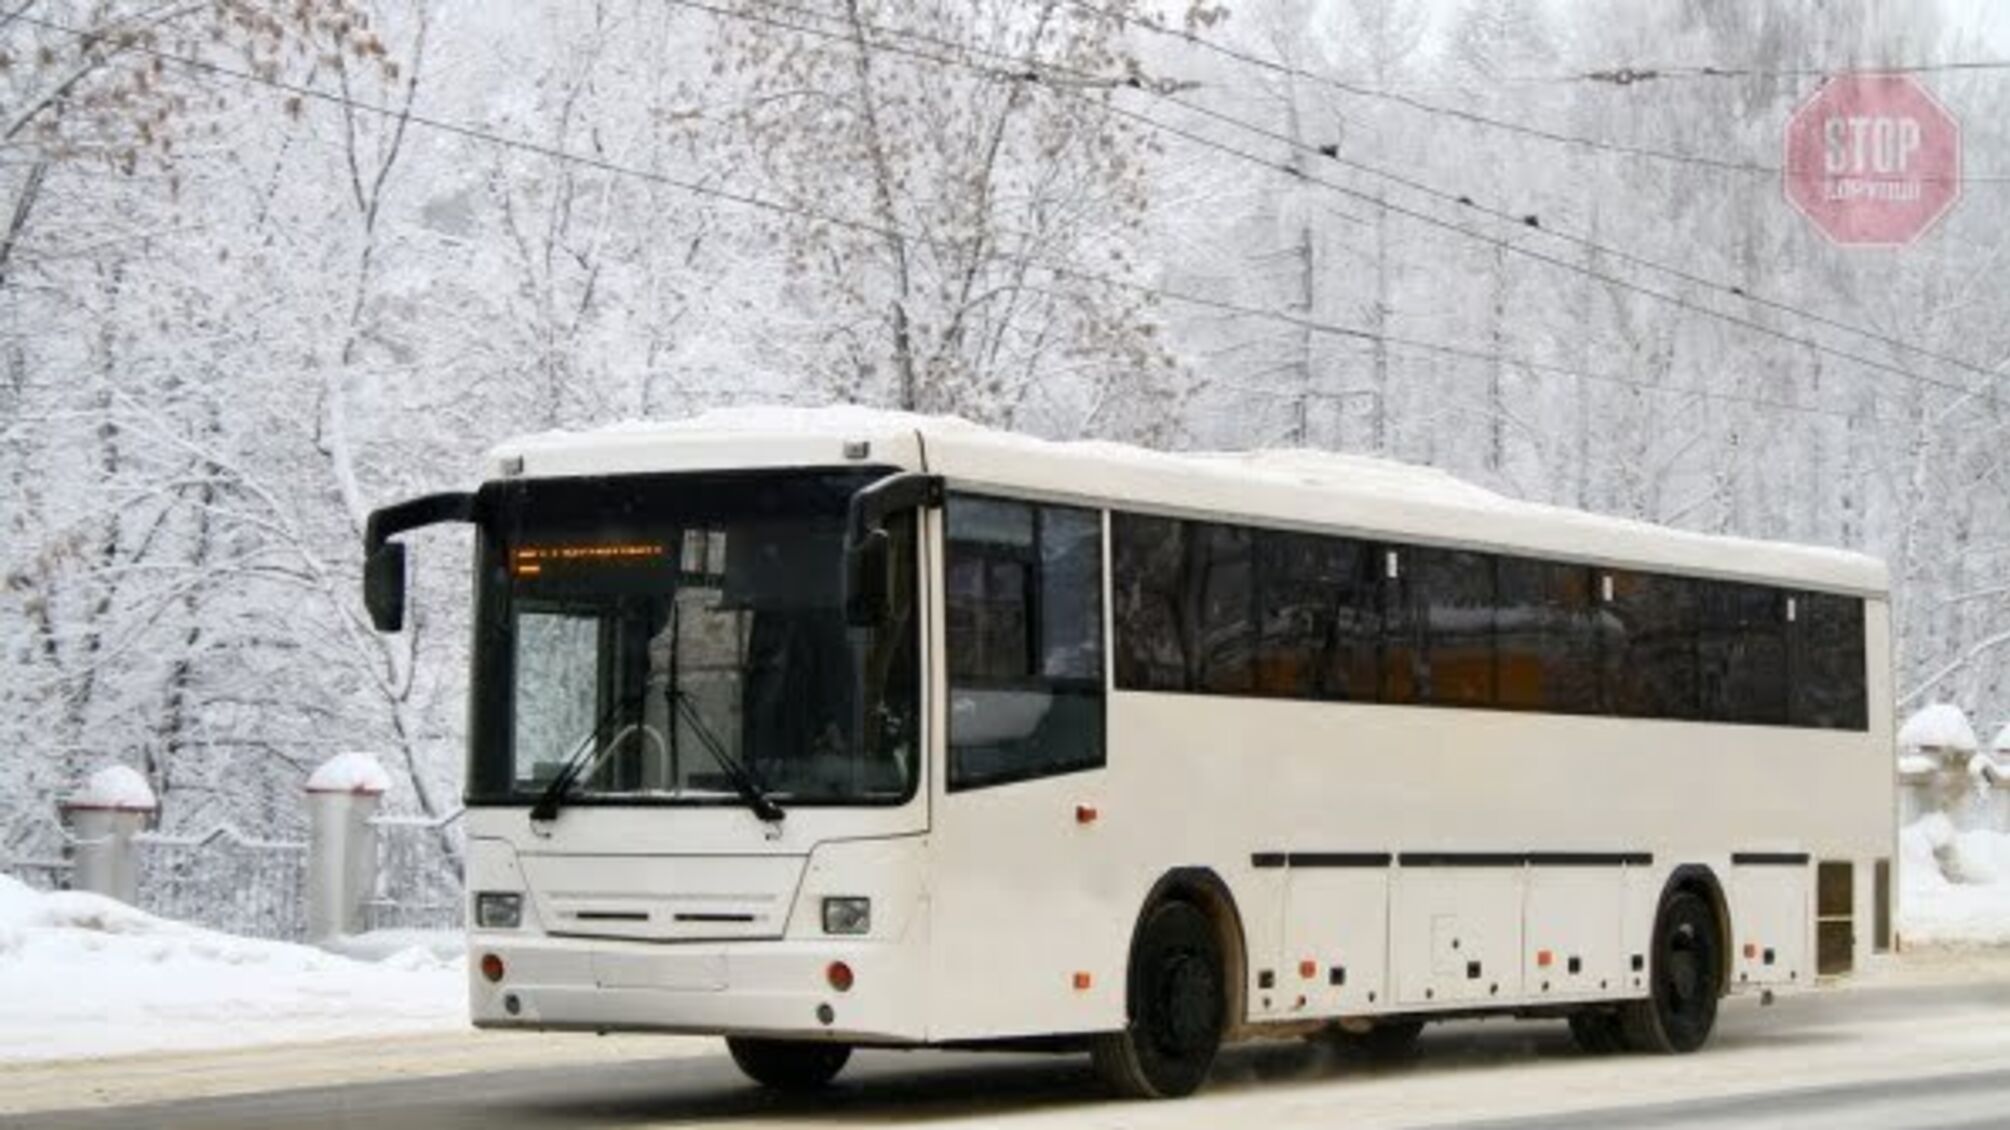 Новини Запоріжжя: Під містом вихователька дитсадка висадила 5-річну дівчинку з автобуса на морозі біля лісосмуги 